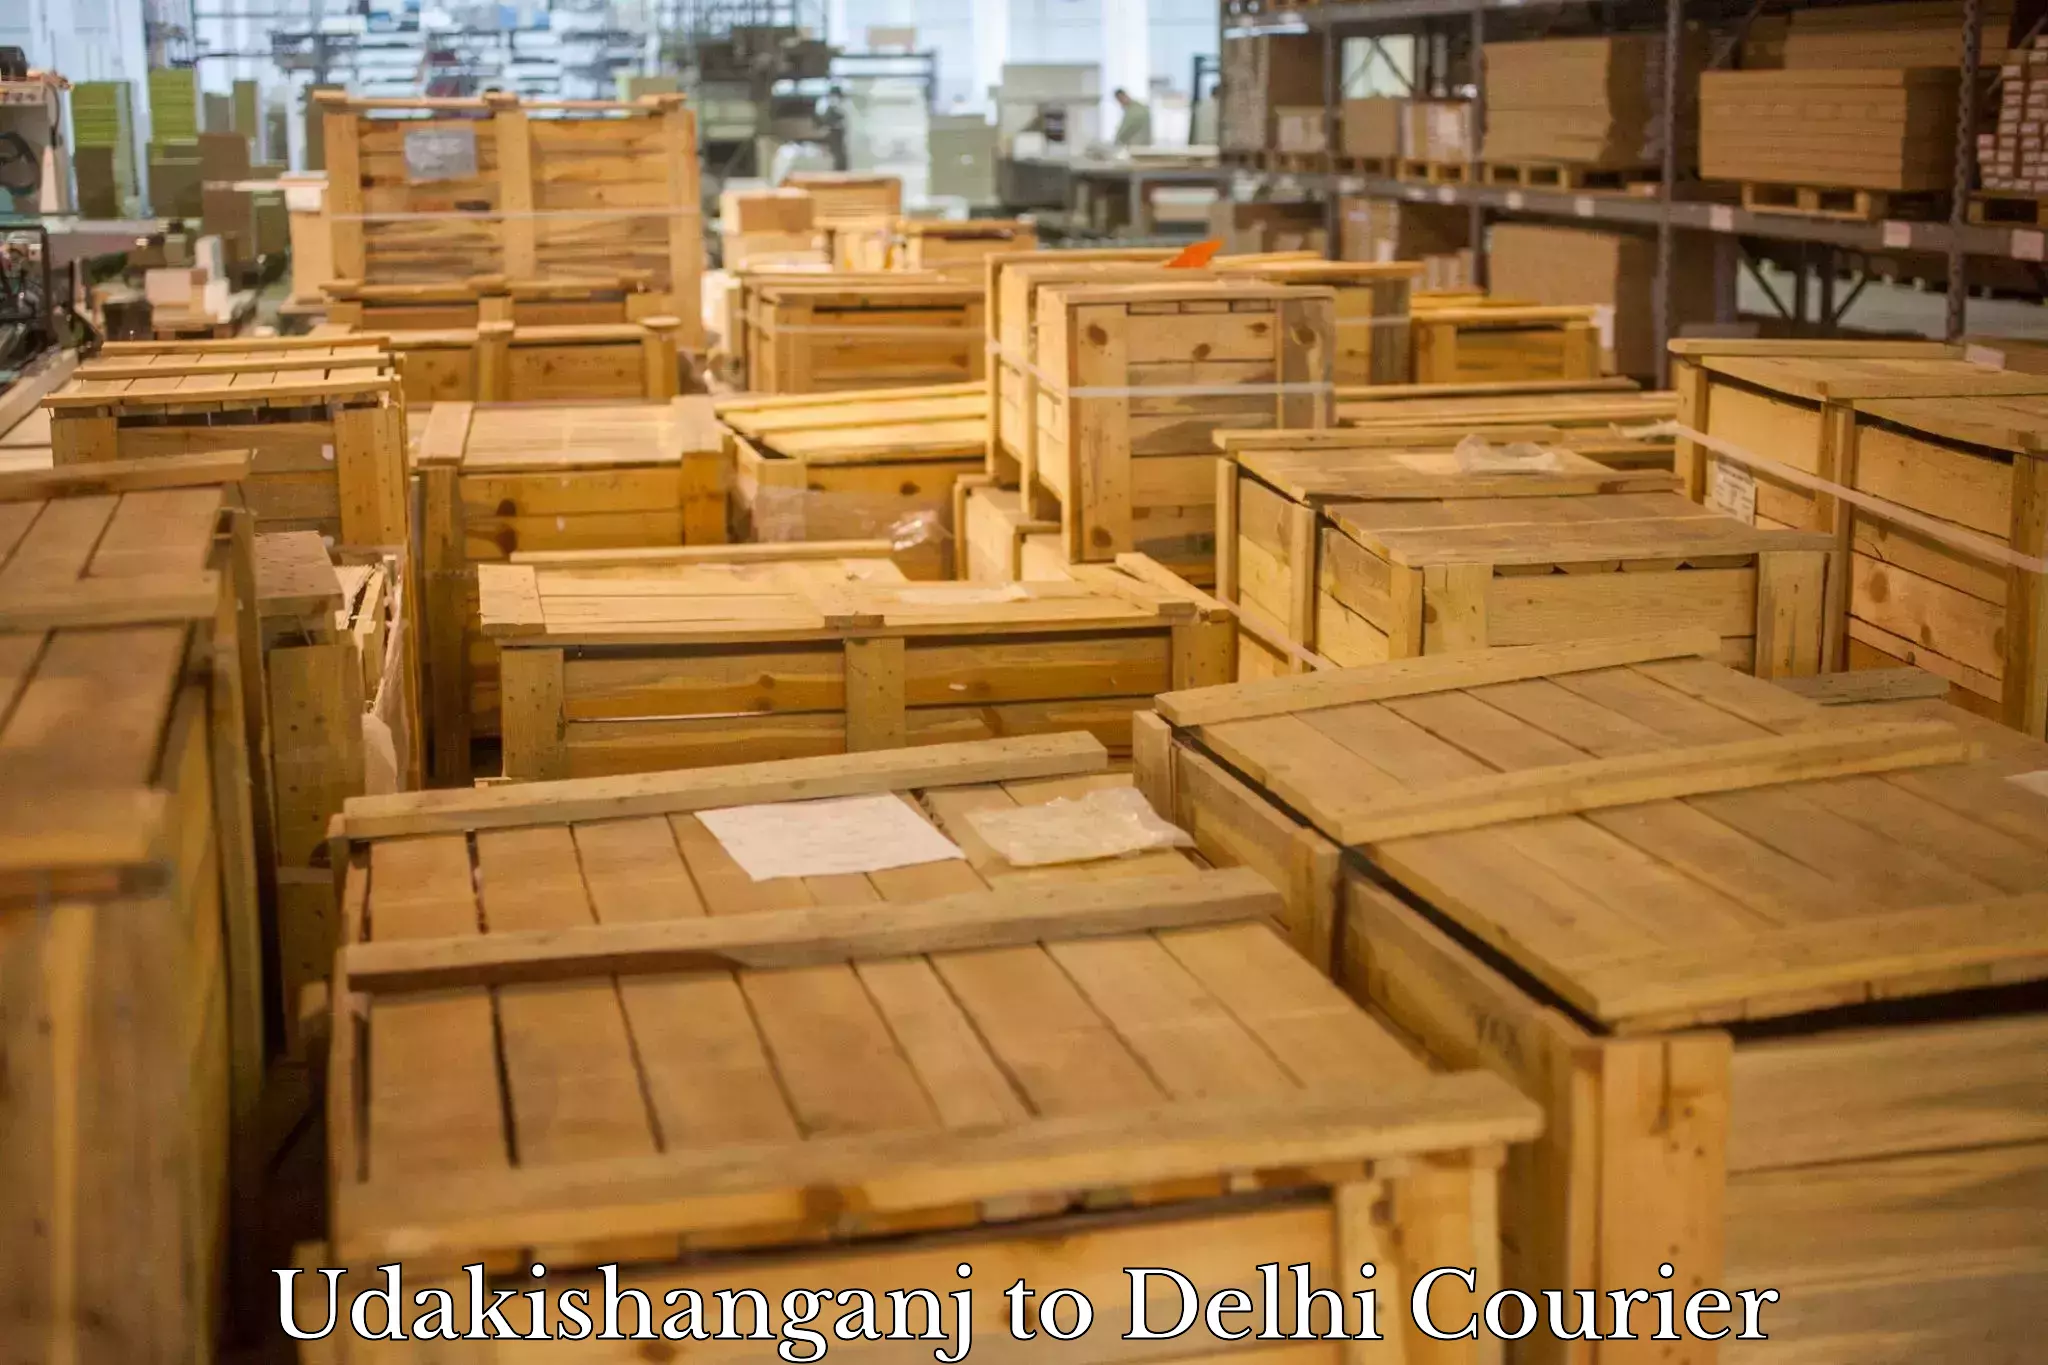 Dynamic courier operations Udakishanganj to University of Delhi